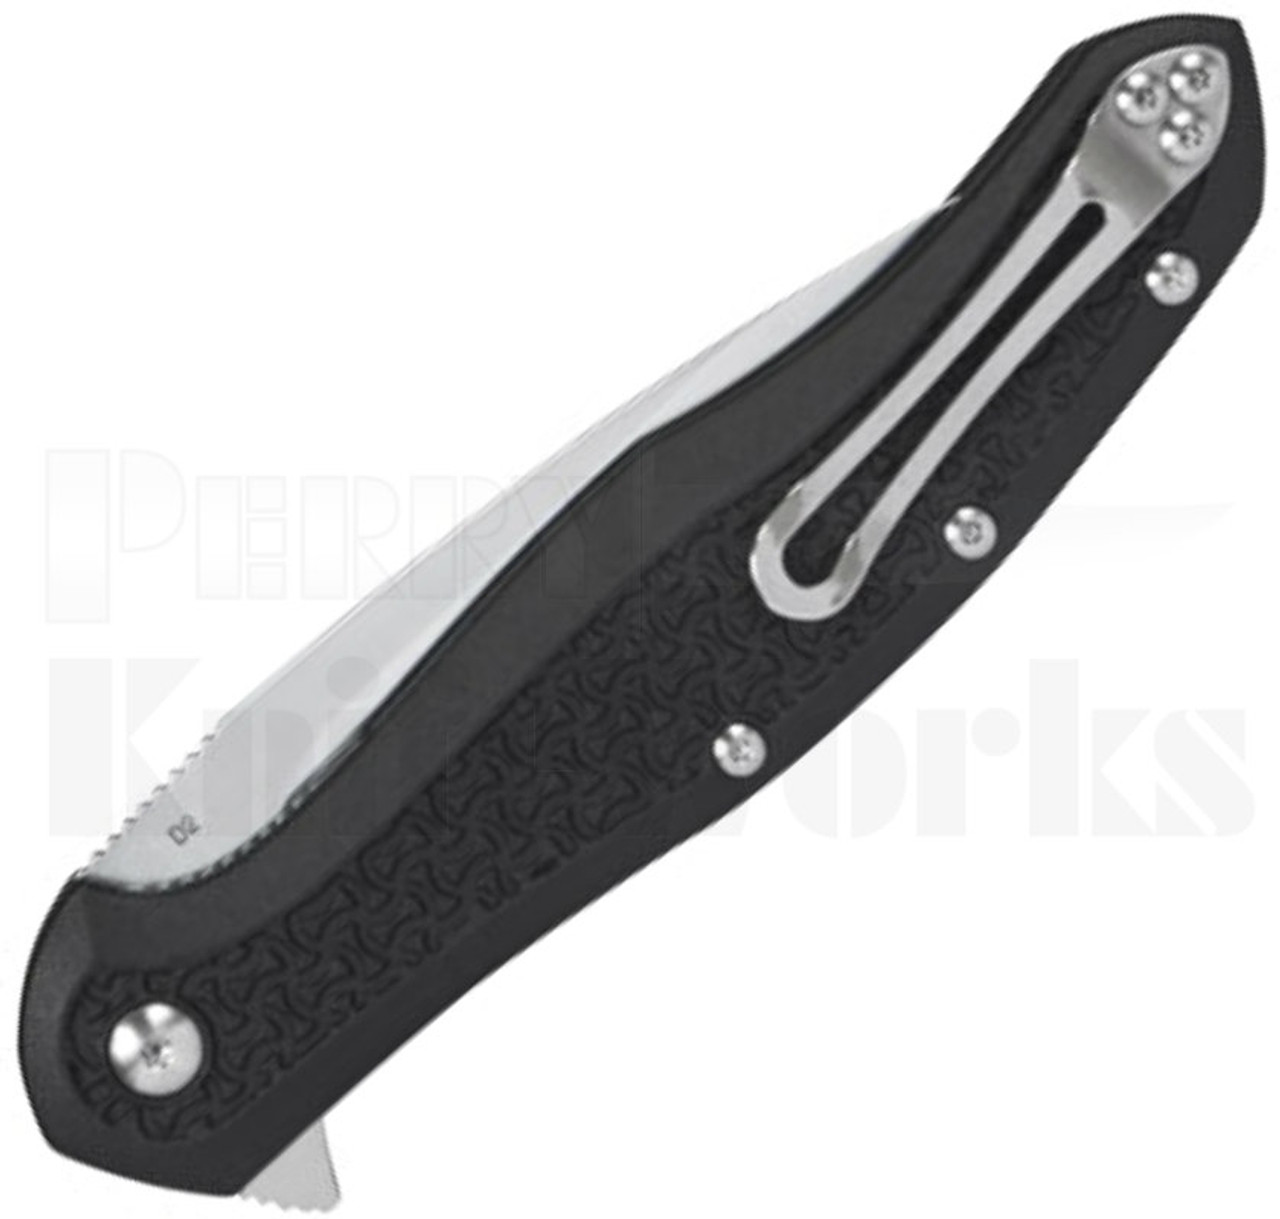 Steel Will Intrigue Linerlock Knife Black FRN (3.75" Satin) F45-11 